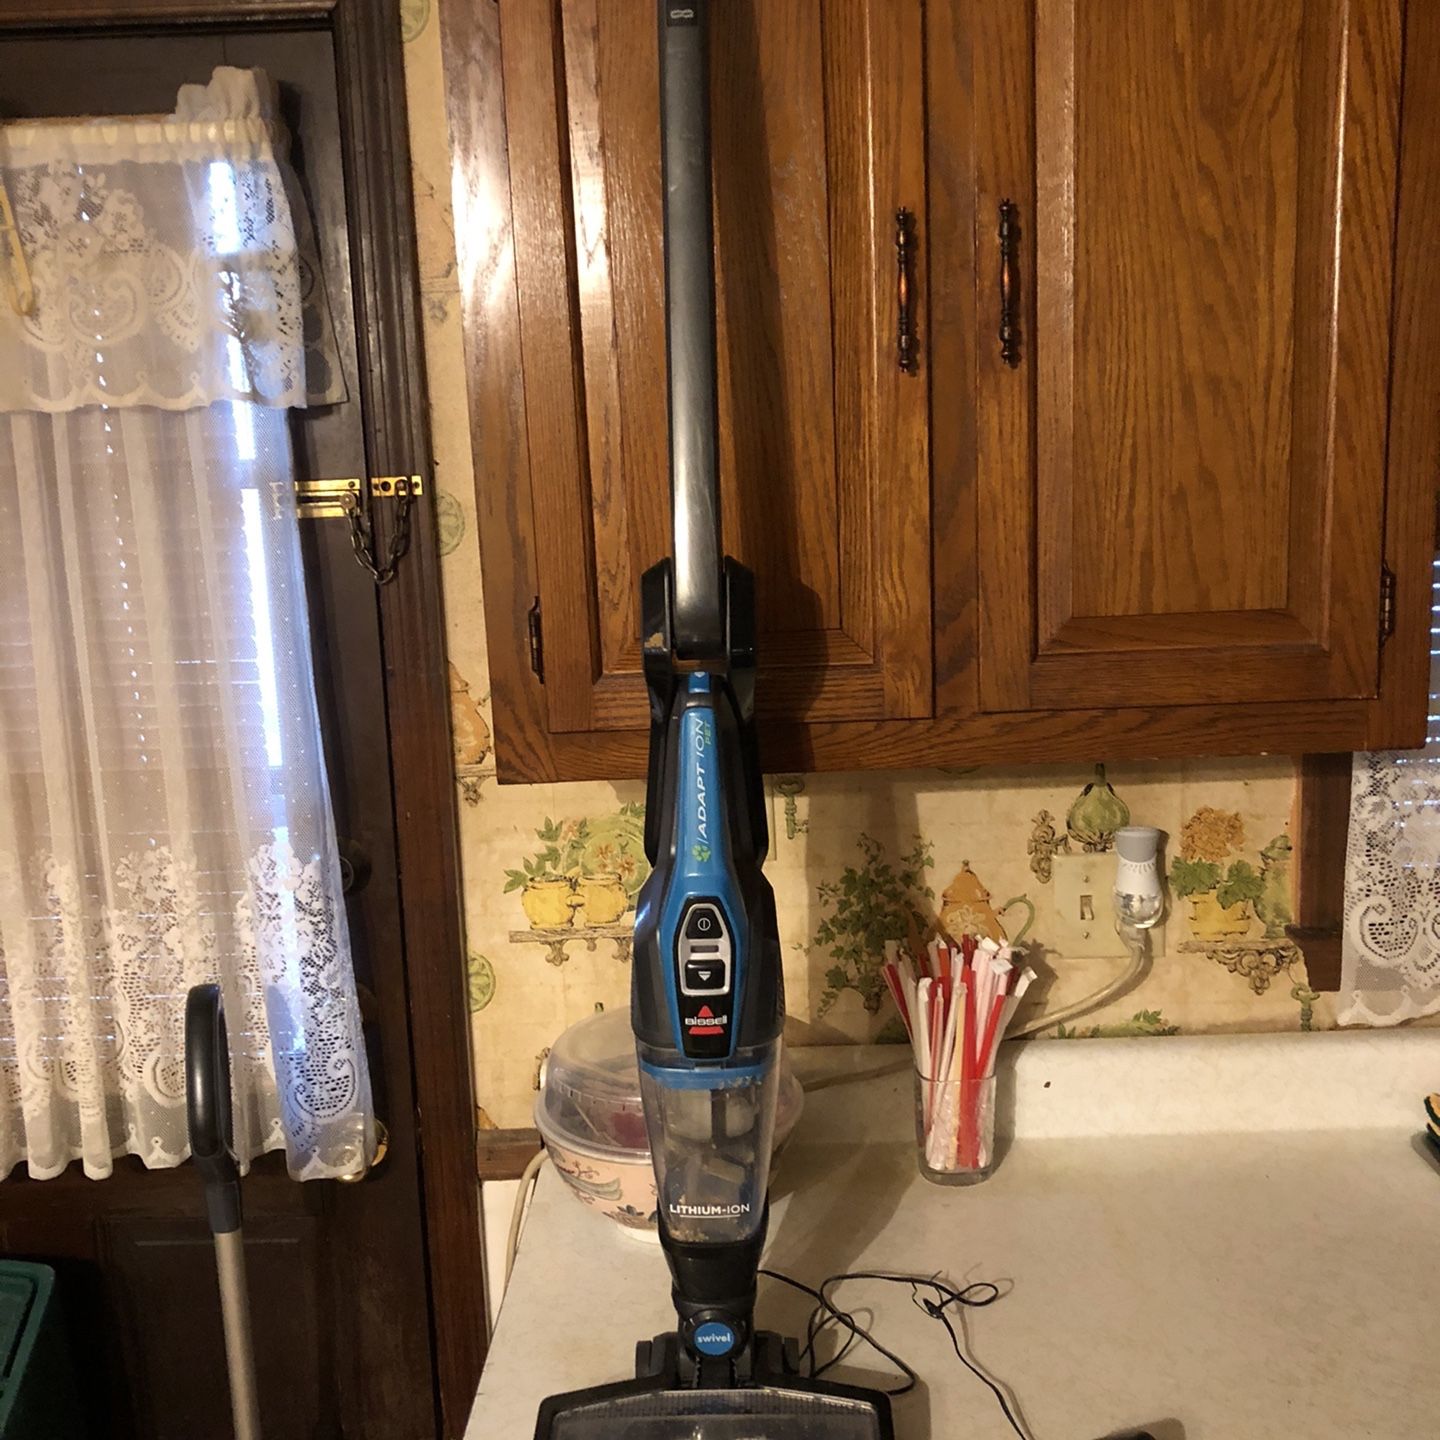 Cordless vacuum